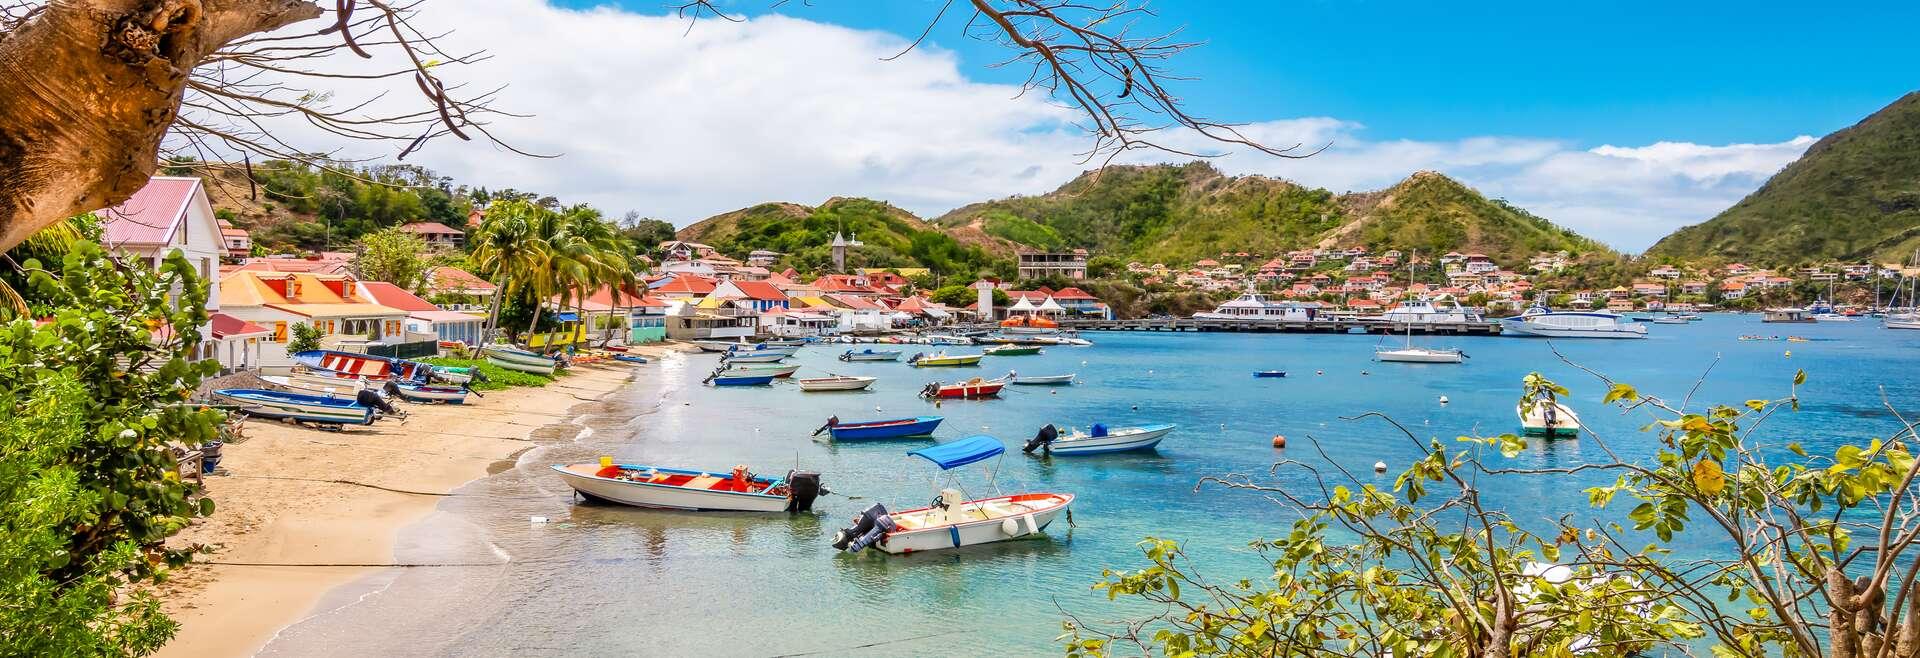 Séjour linguistique Guadeloupe, Plage - bateaux